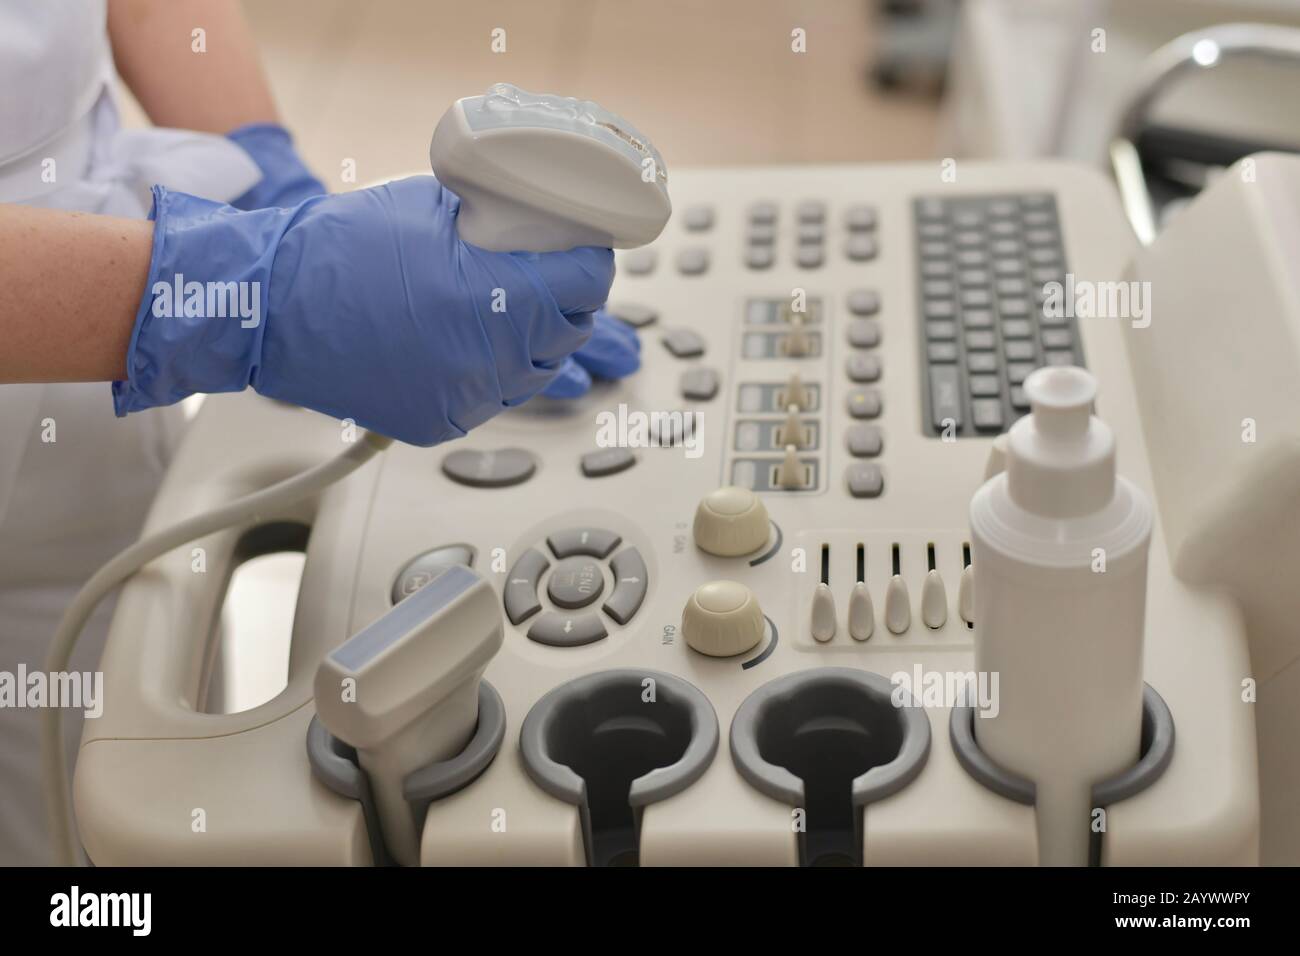 Trasduttore a ultrasuoni con gel in mano, sullo sfondo del pannello di controllo, esattamente in vista laterale. Foto Stock